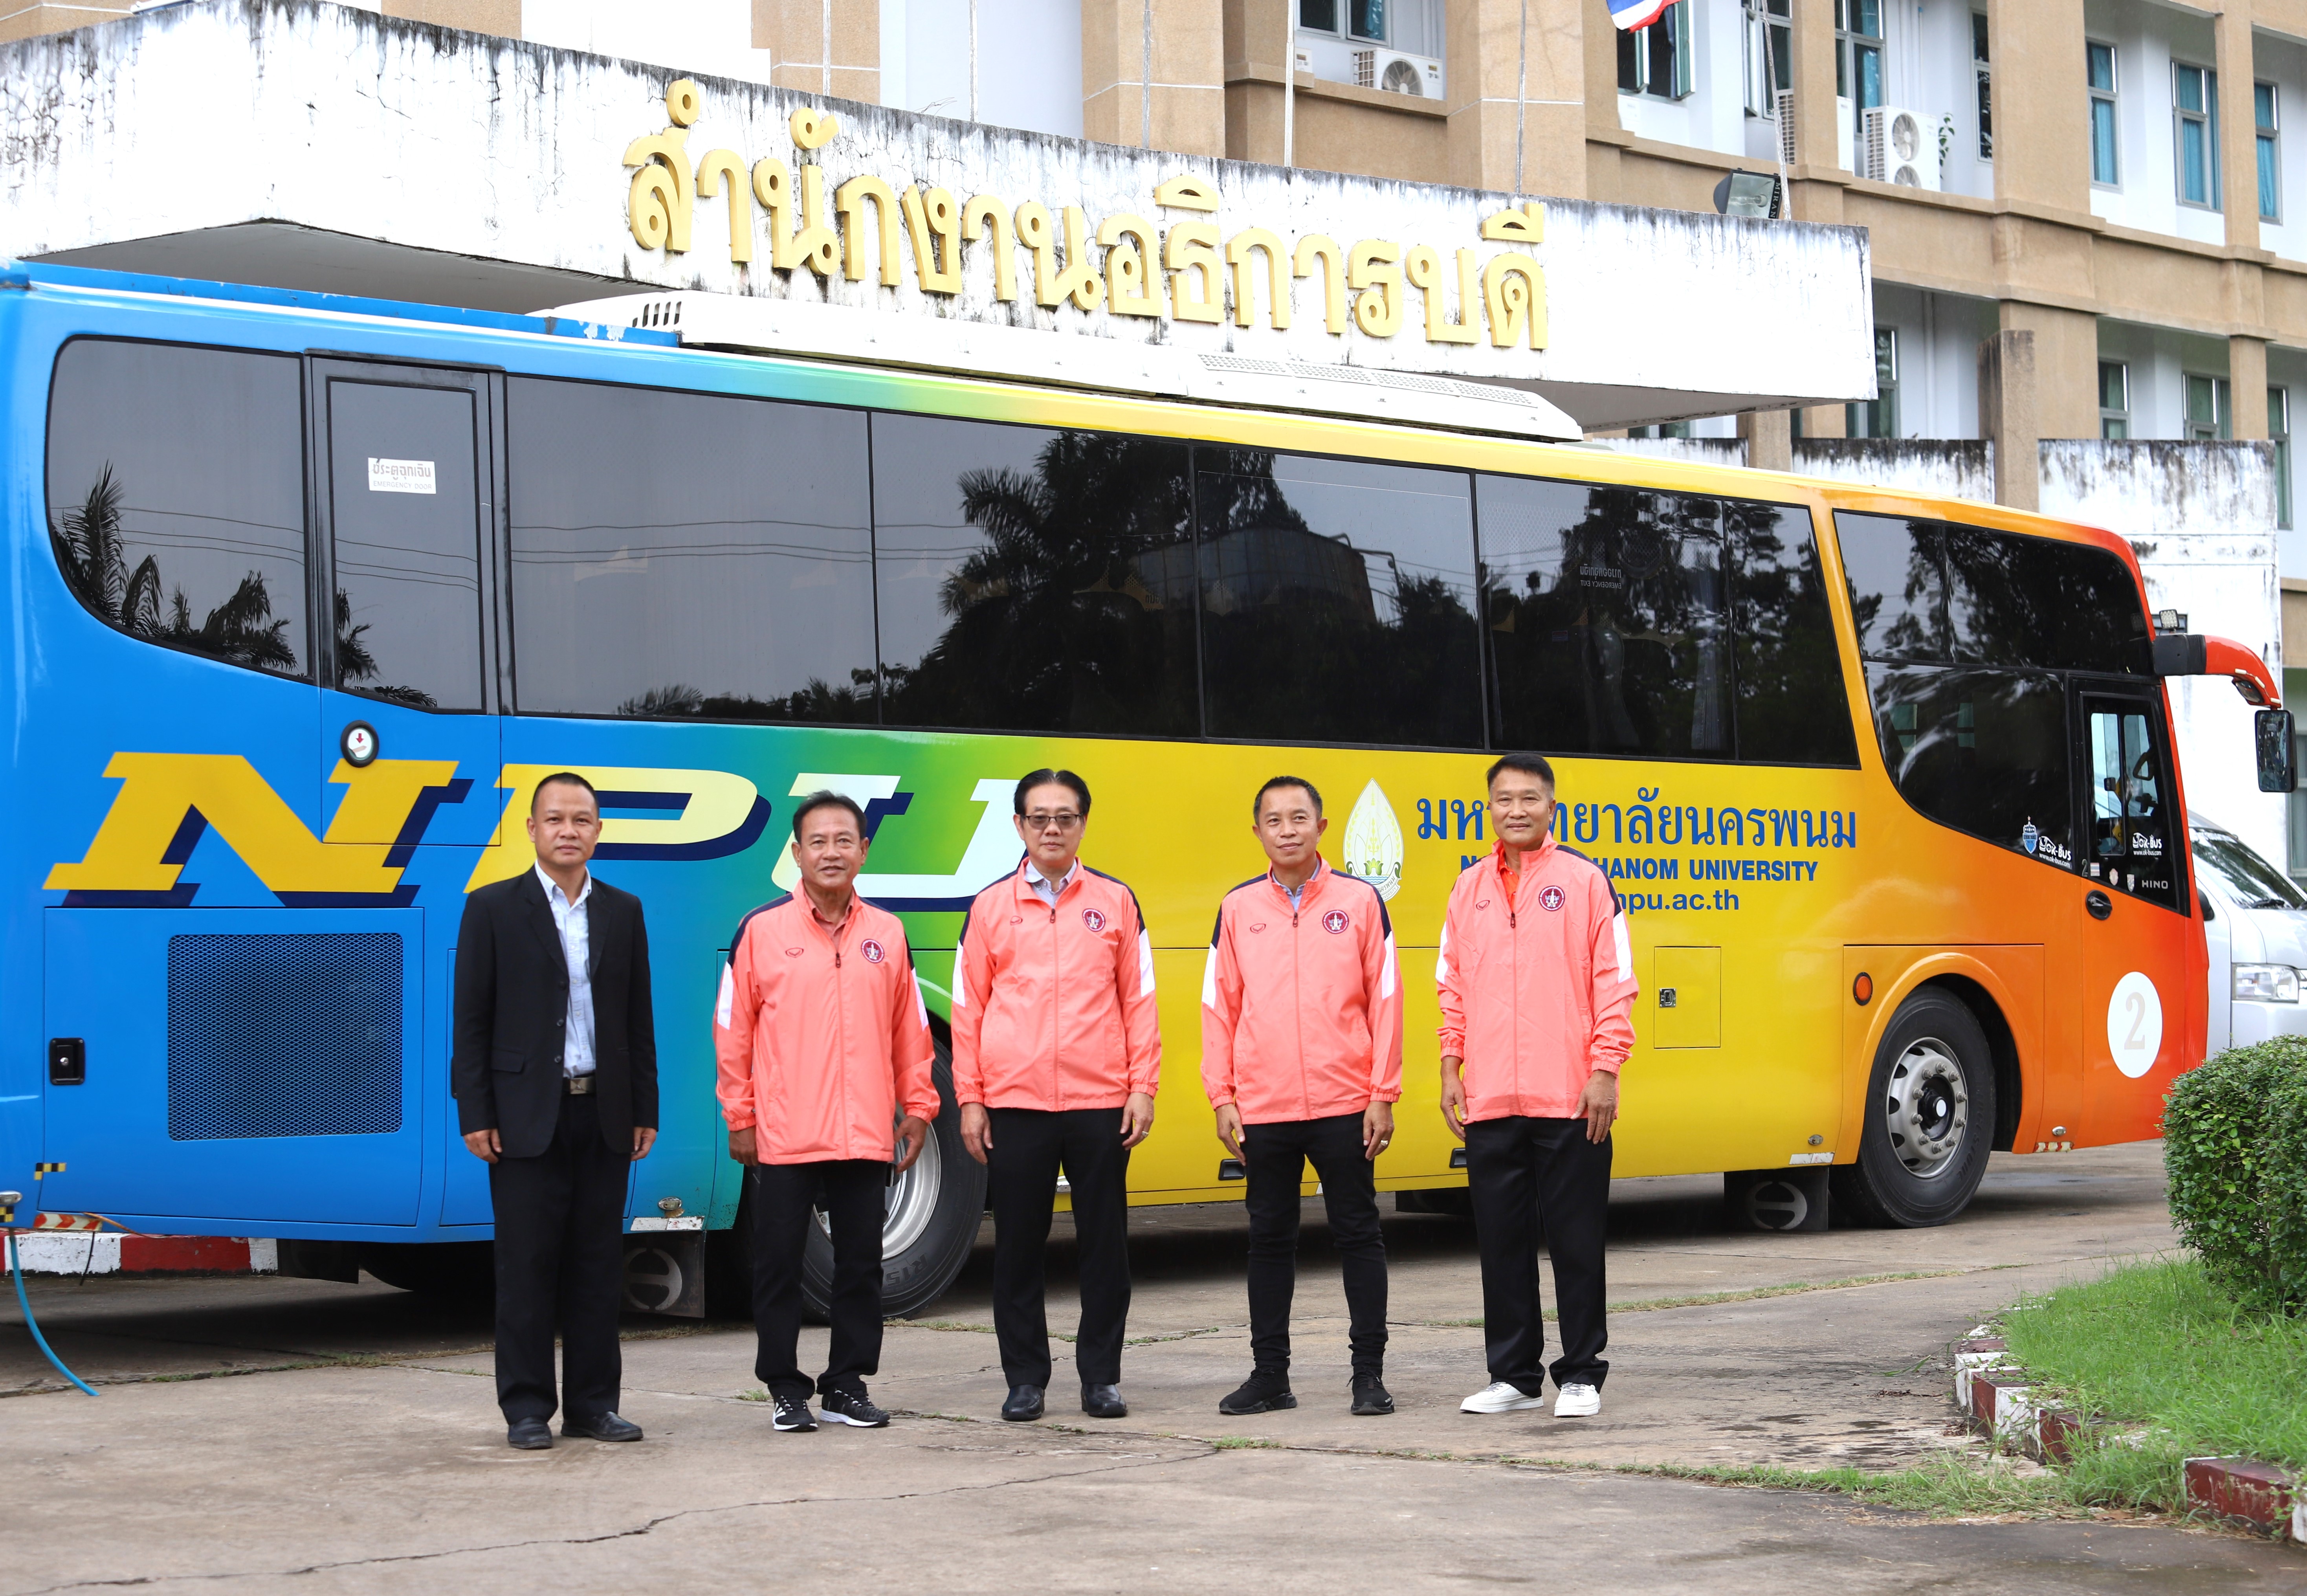 ม.นครพนม สนับสนุนบุคลากรและรถบัสแก่สมาคมกีฬาฟุตบอลอาวุโสจังหวัด เพื่อเข้าร่วมการแข่งขันฟุตบอลชิงแชมป์ประเทศไทยถ้วยพระราชทานฯ ระหว่างวันที่ 6-9 ตุลาคม 2566 ณ จังหวัดลพบุรี